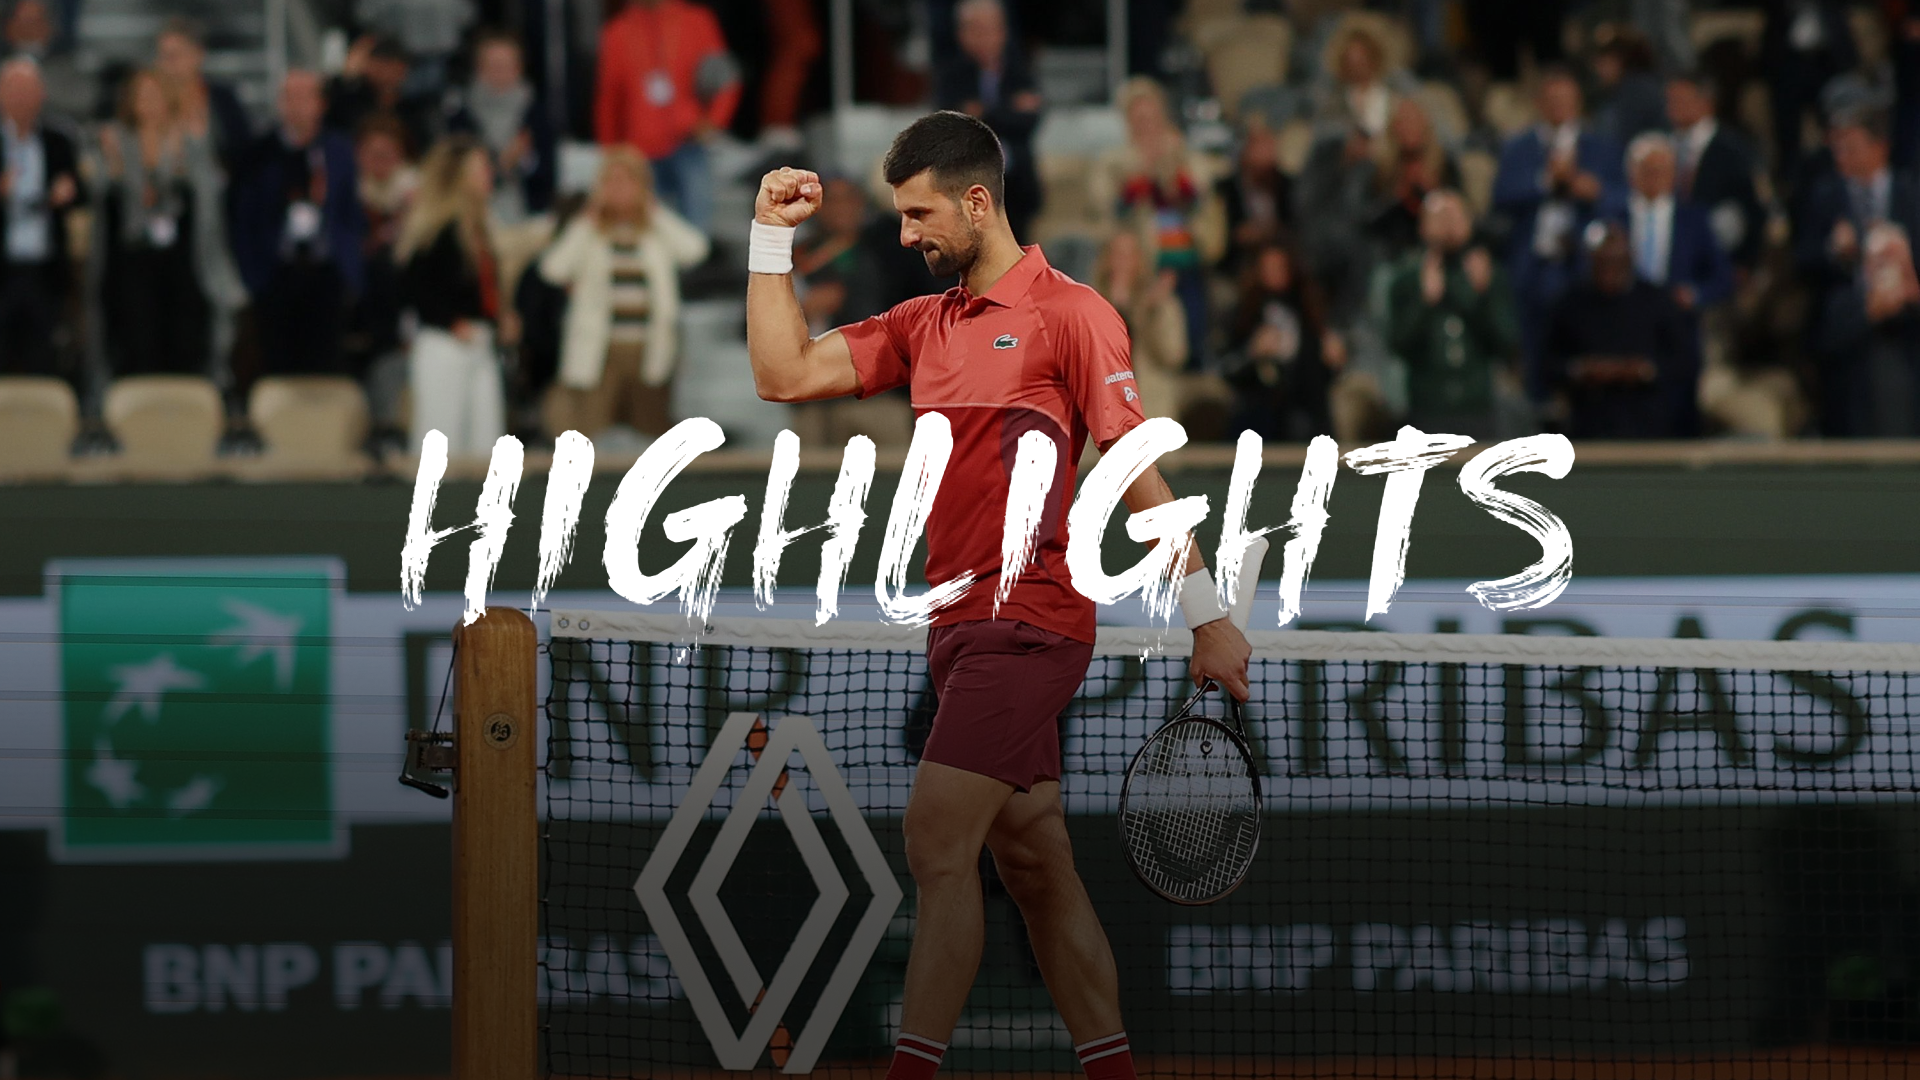 French Open - 1. Runde: Djokovic siegt routiniert - Highlights